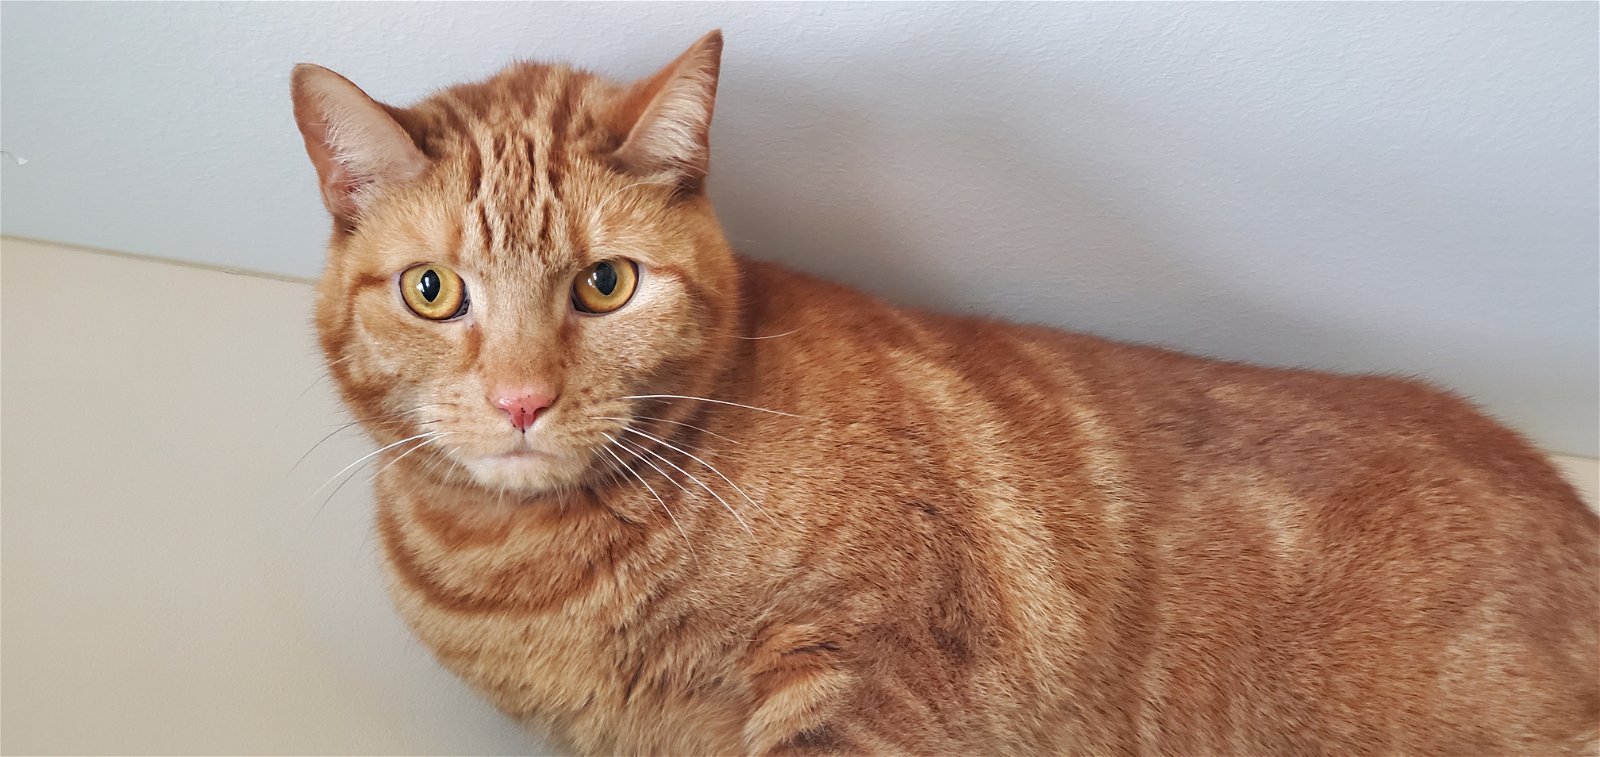 adoptable Cat in Arlington, VT named Apollo